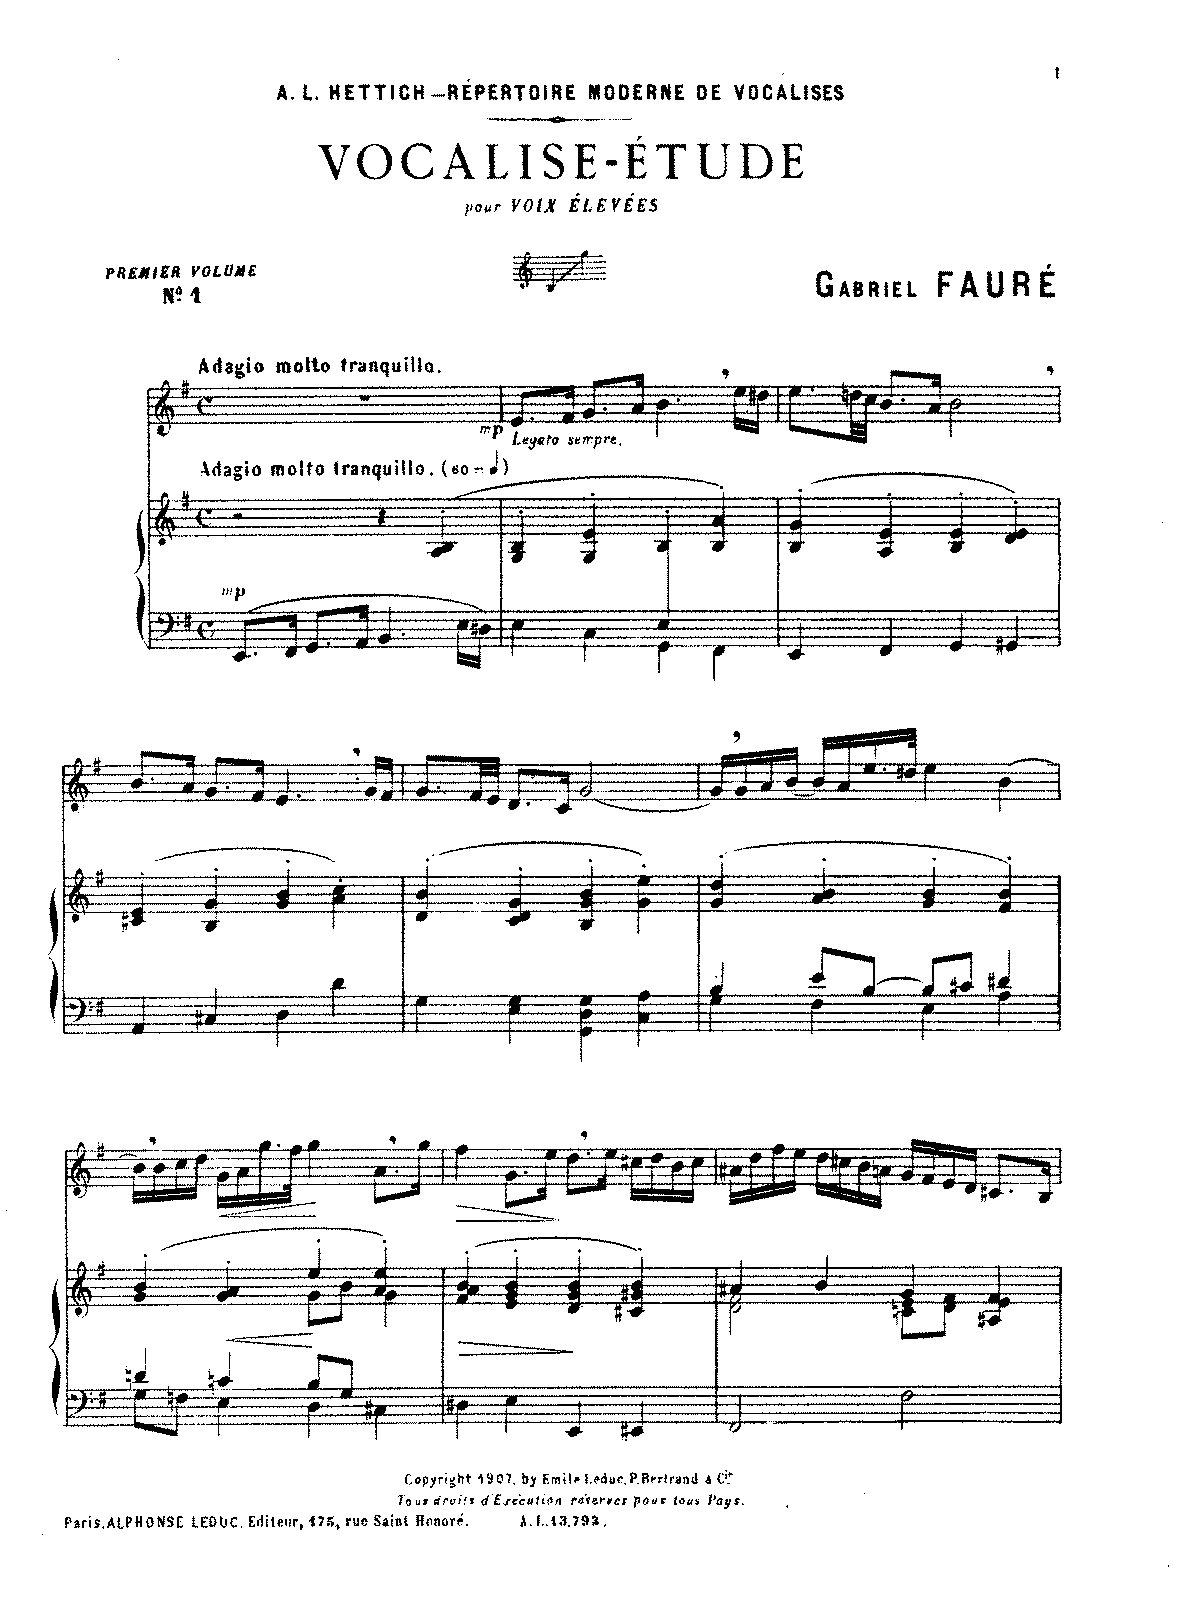 Vocalise-étude (Fauré, Gabriel) - IMSLP: Free Sheet Music PDF Download